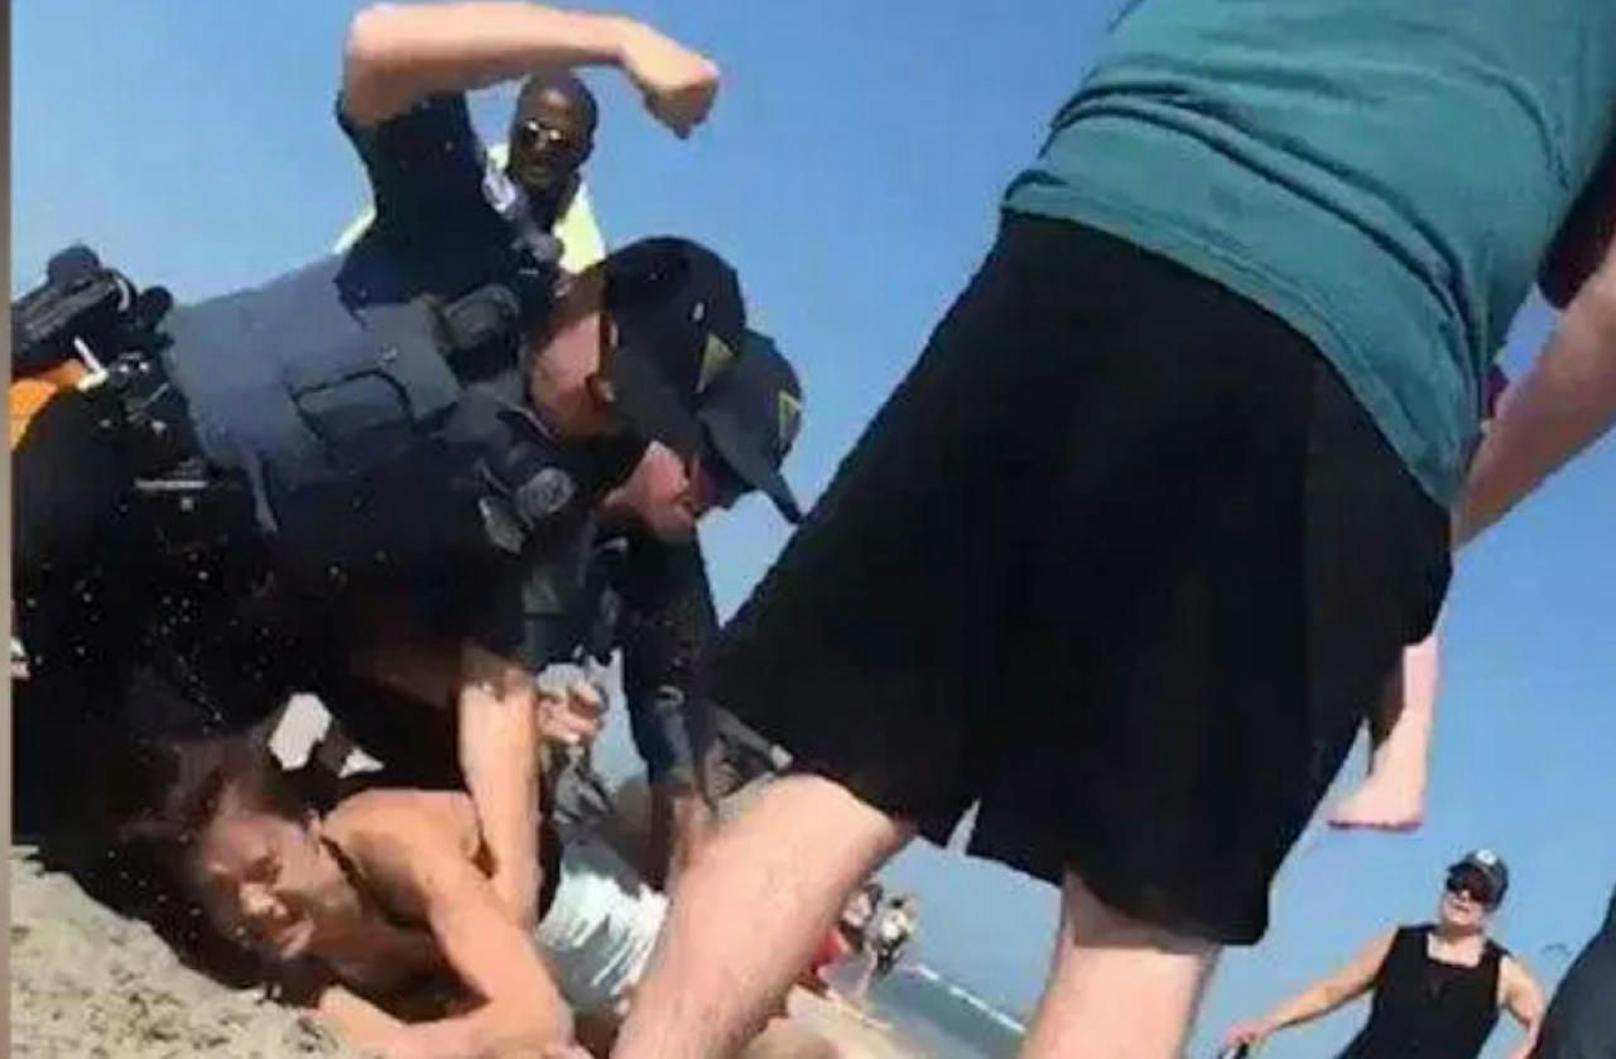 Skandalös: Die Polizisten schlagen auf Emily W. (20) am Strand von Wildwood (New Jersey) ein. 